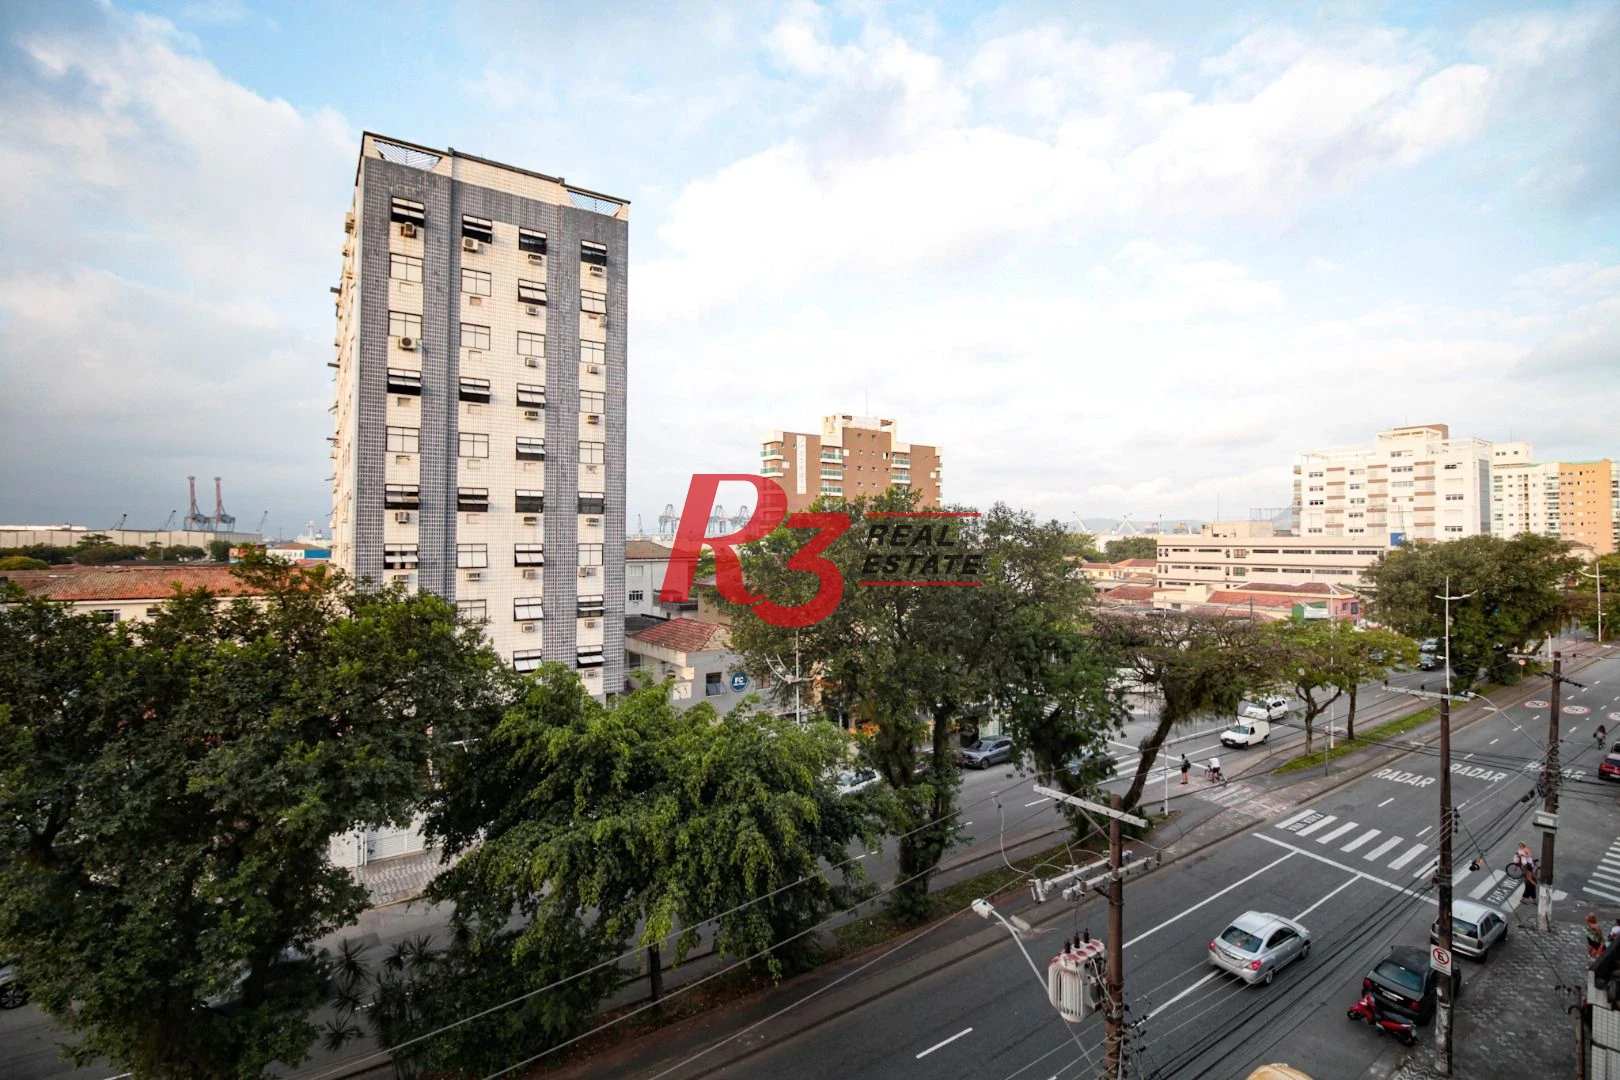 Apartamento à venda, 90 m² por R$ 465.000,00 - Aparecida - Santos/SP